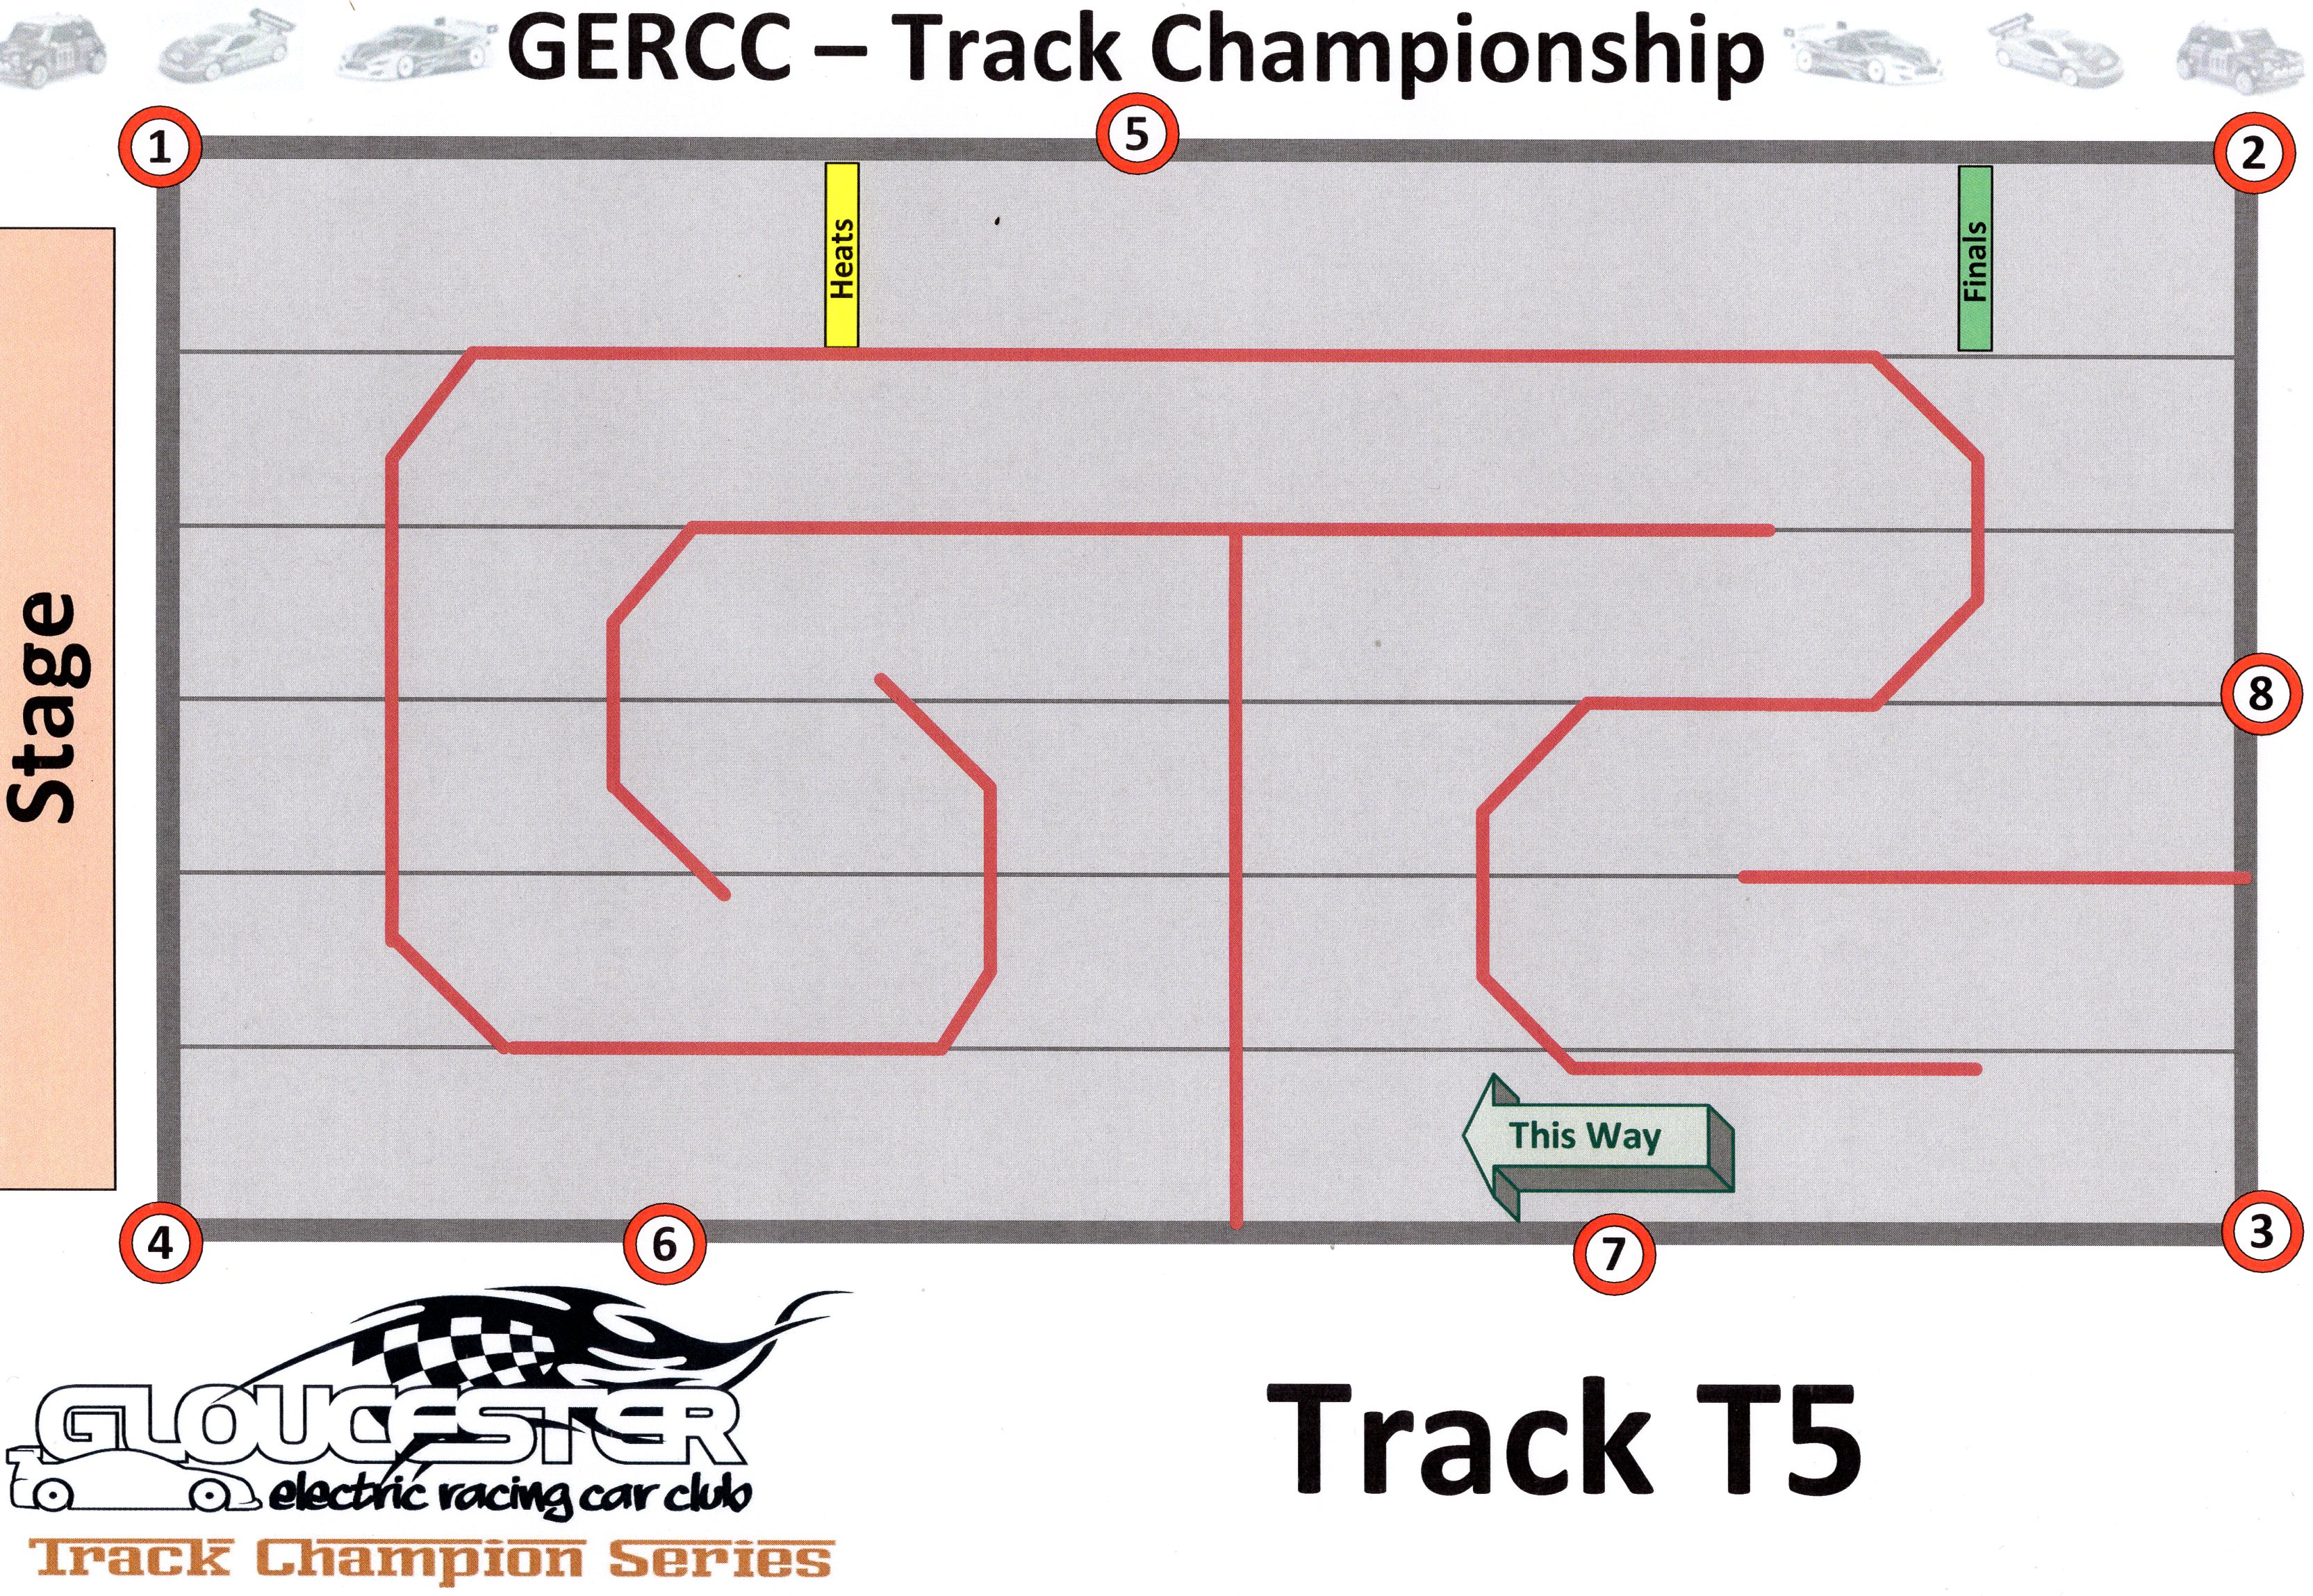 GERCC TCS Track 5